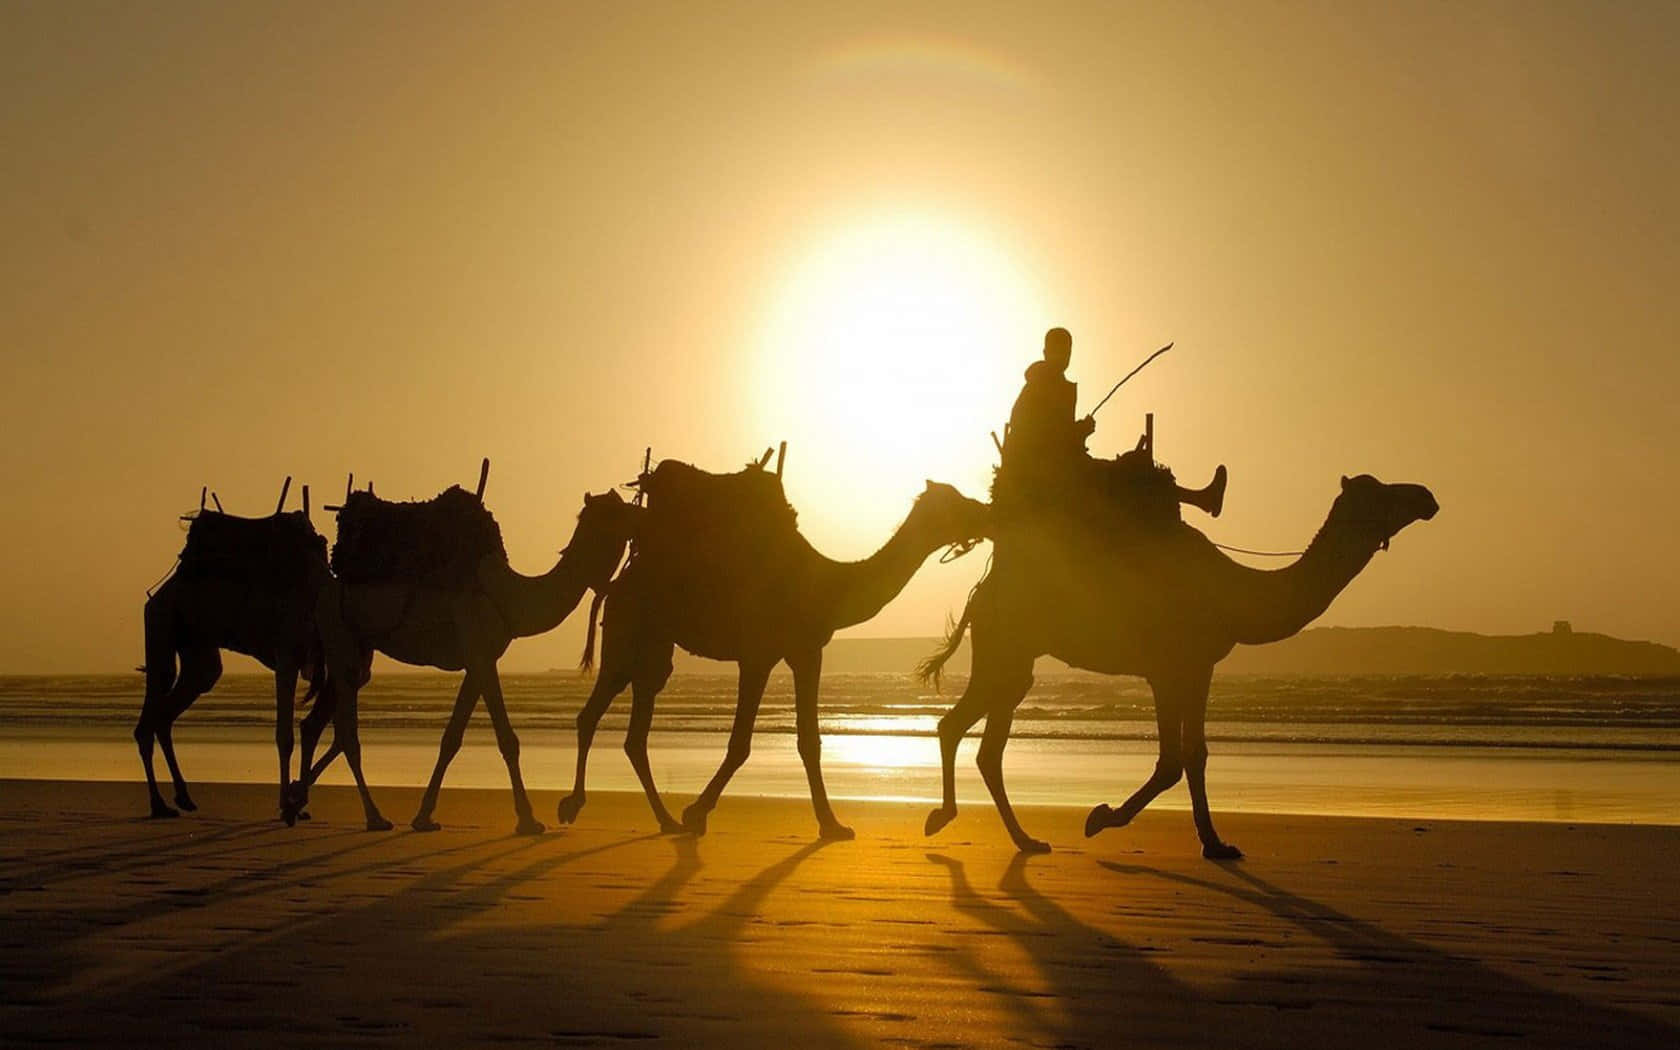 A lonely camel trekking across the desert